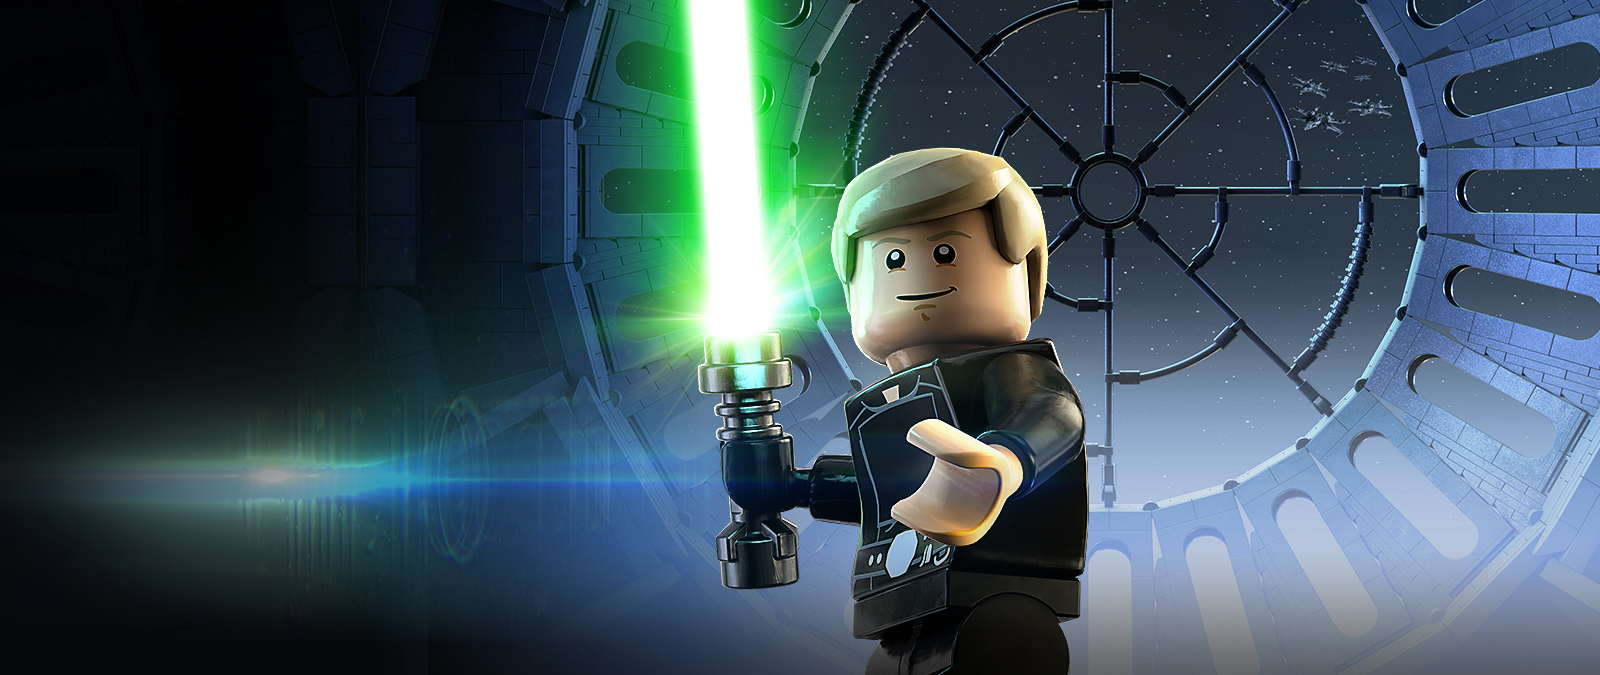 Luke Skywalker a Halálcsillag megfigyelő fedélzetén vonja ki a fénykardját.